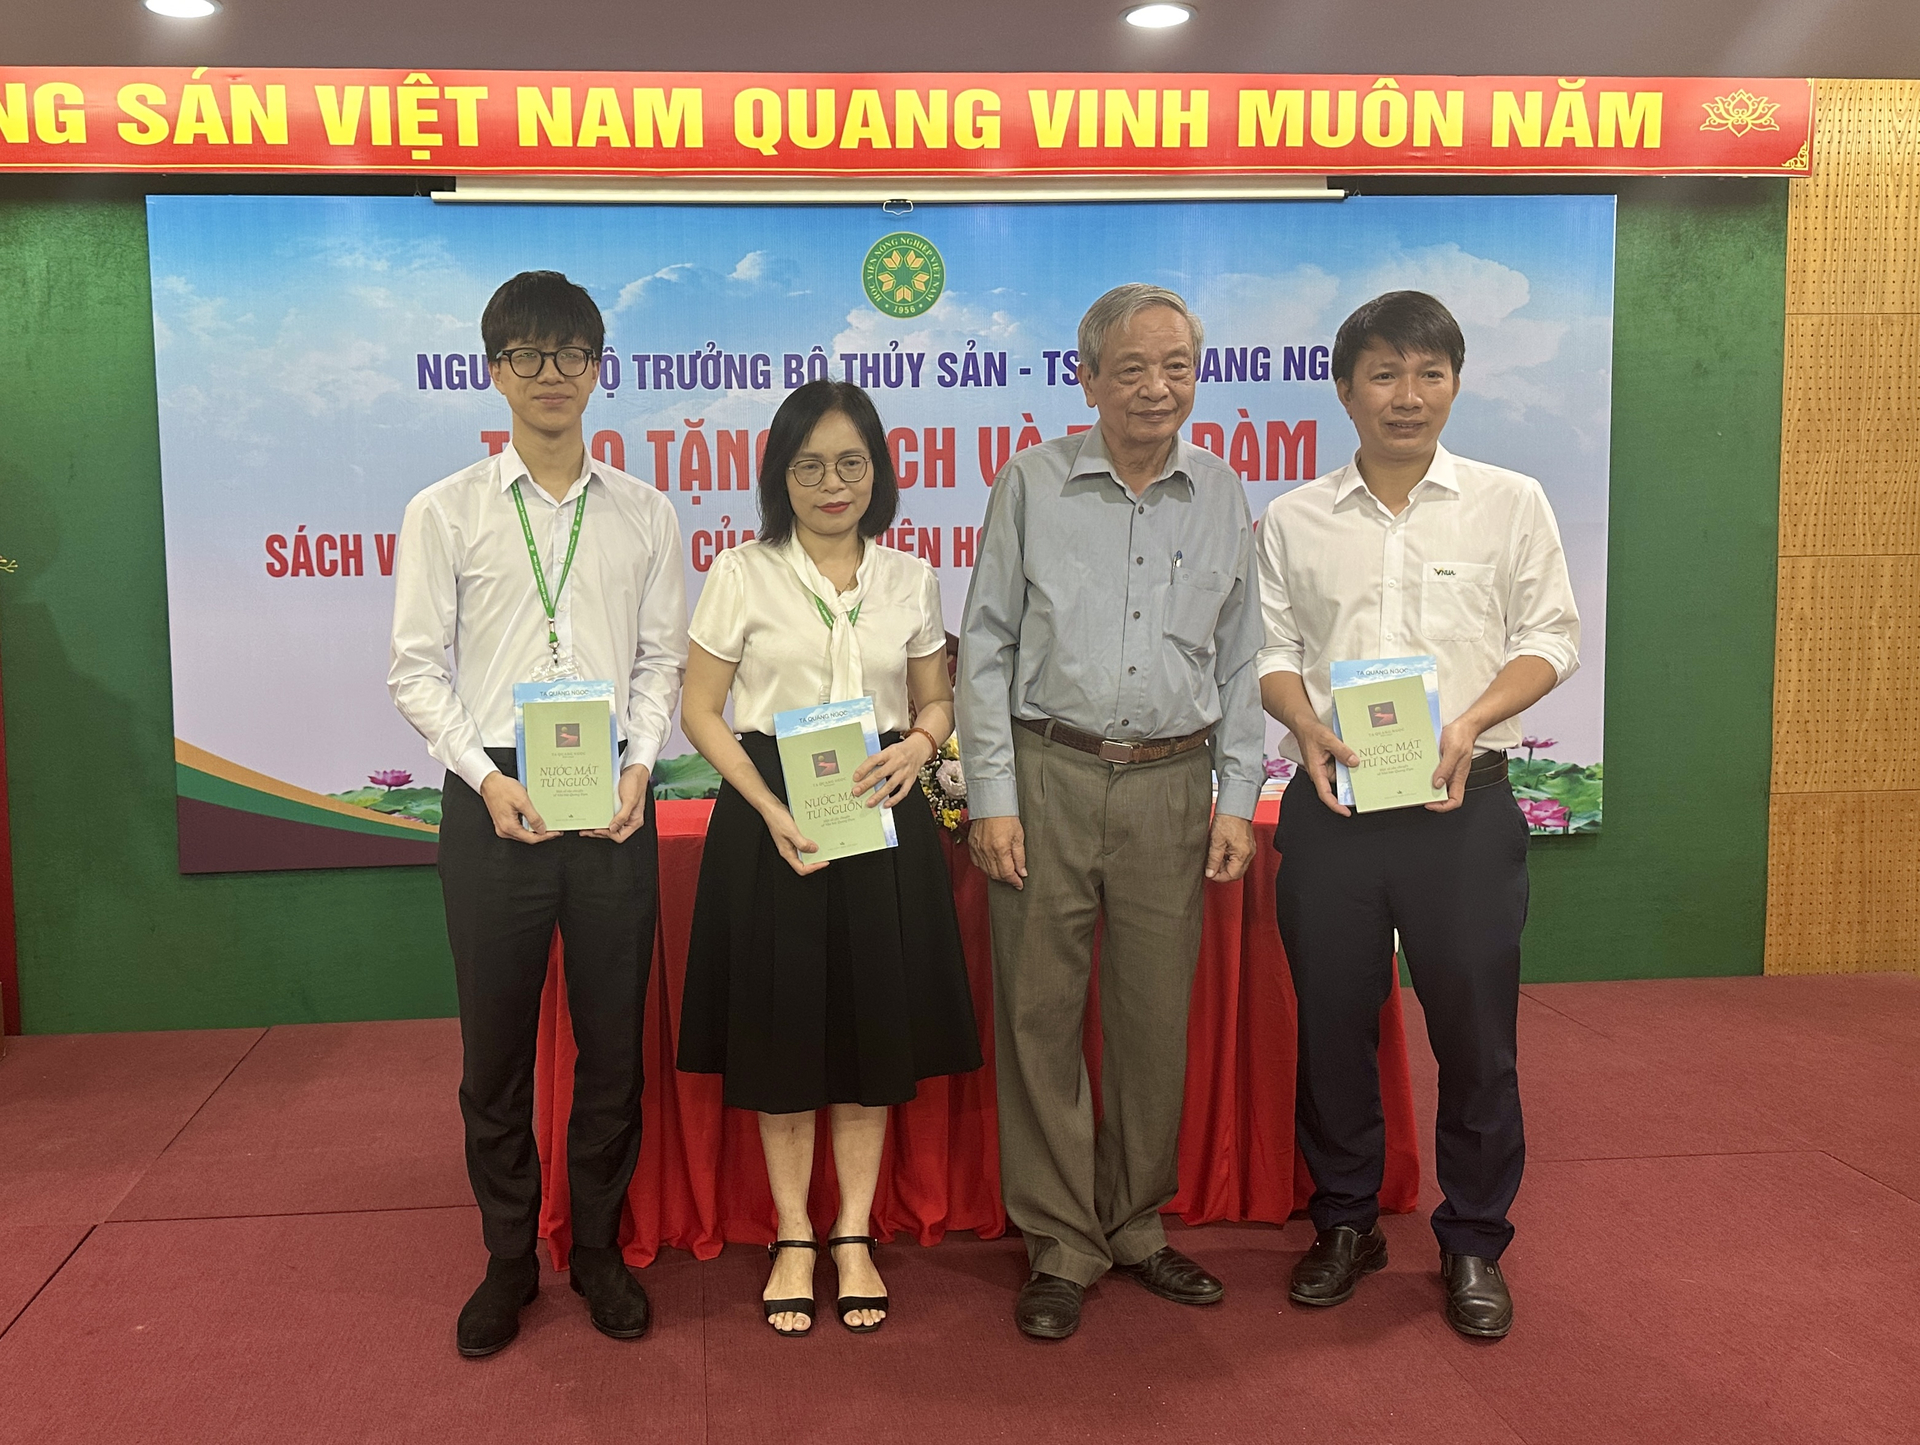 TS Tạ Quang Ngọc trao tặng sách cho sinh viên, đại diện Đoàn thanh niên Học viện Nông nghiệp Việt Nam. Ảnh: Quang Linh.